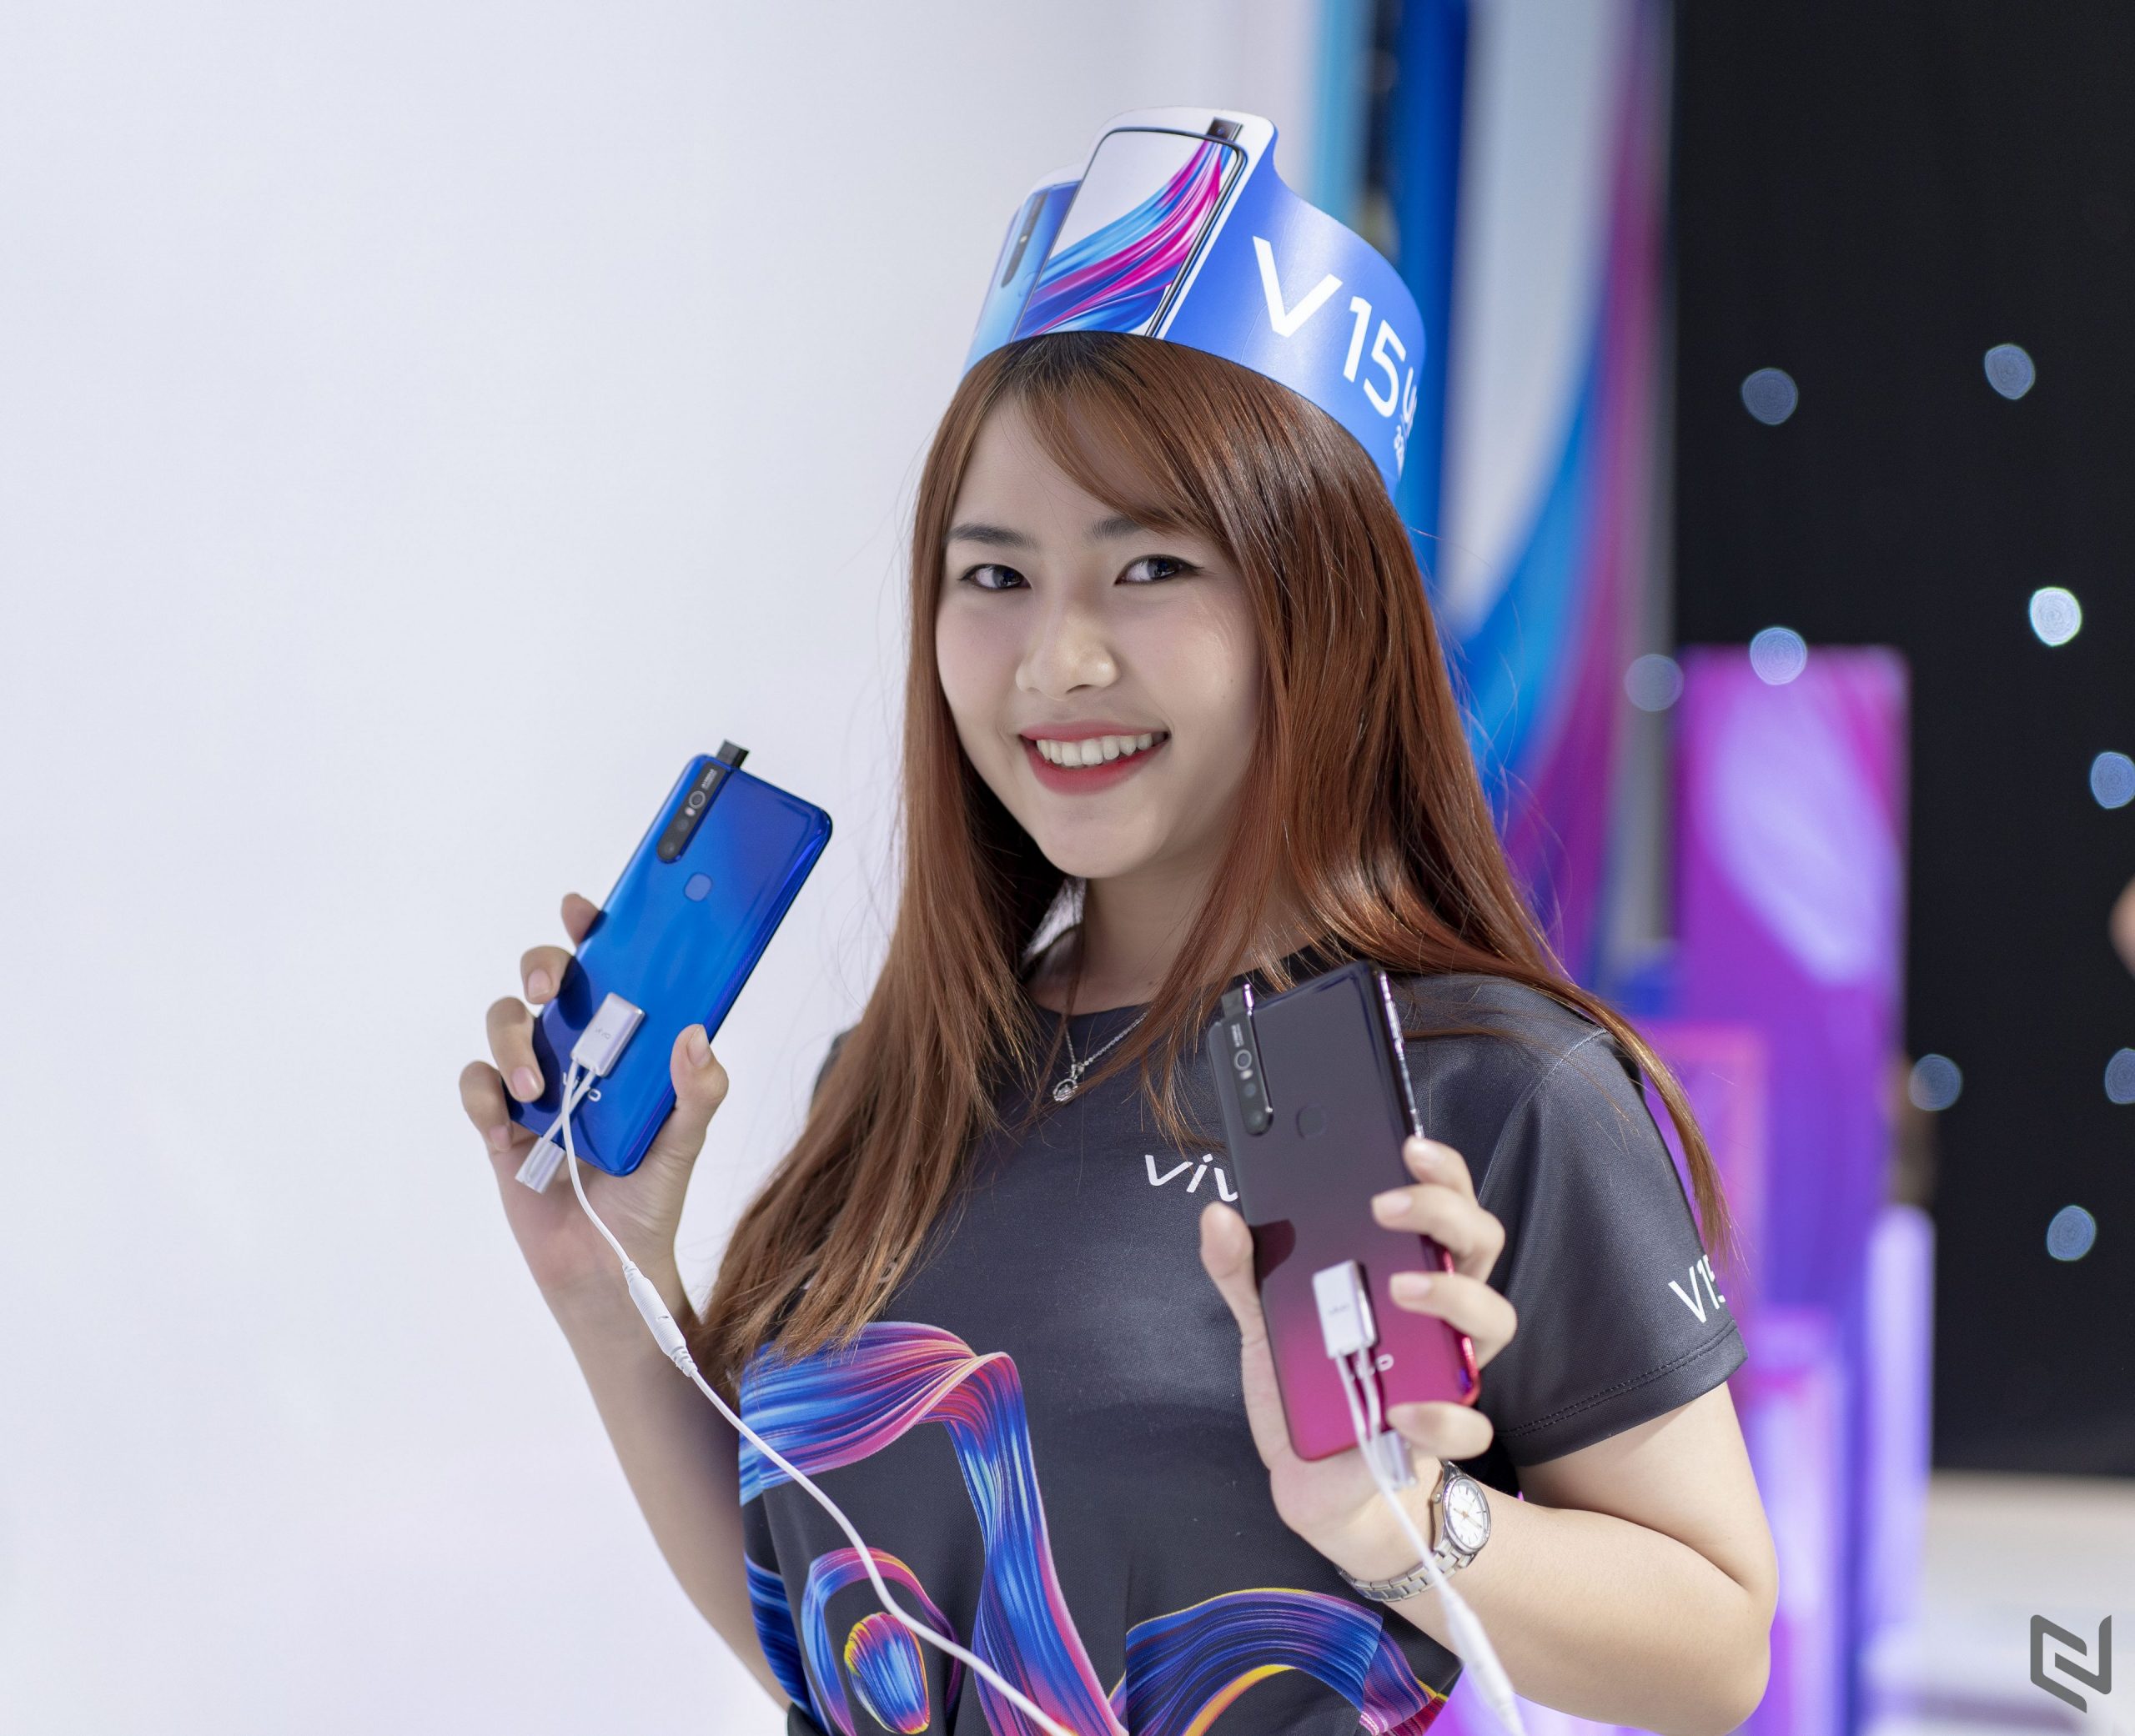 Ra mắt Vivo V15 tại Việt Nam với camera trước tàng hình 32MP, màn hình Ultra FullView, giá 7,990,000đ